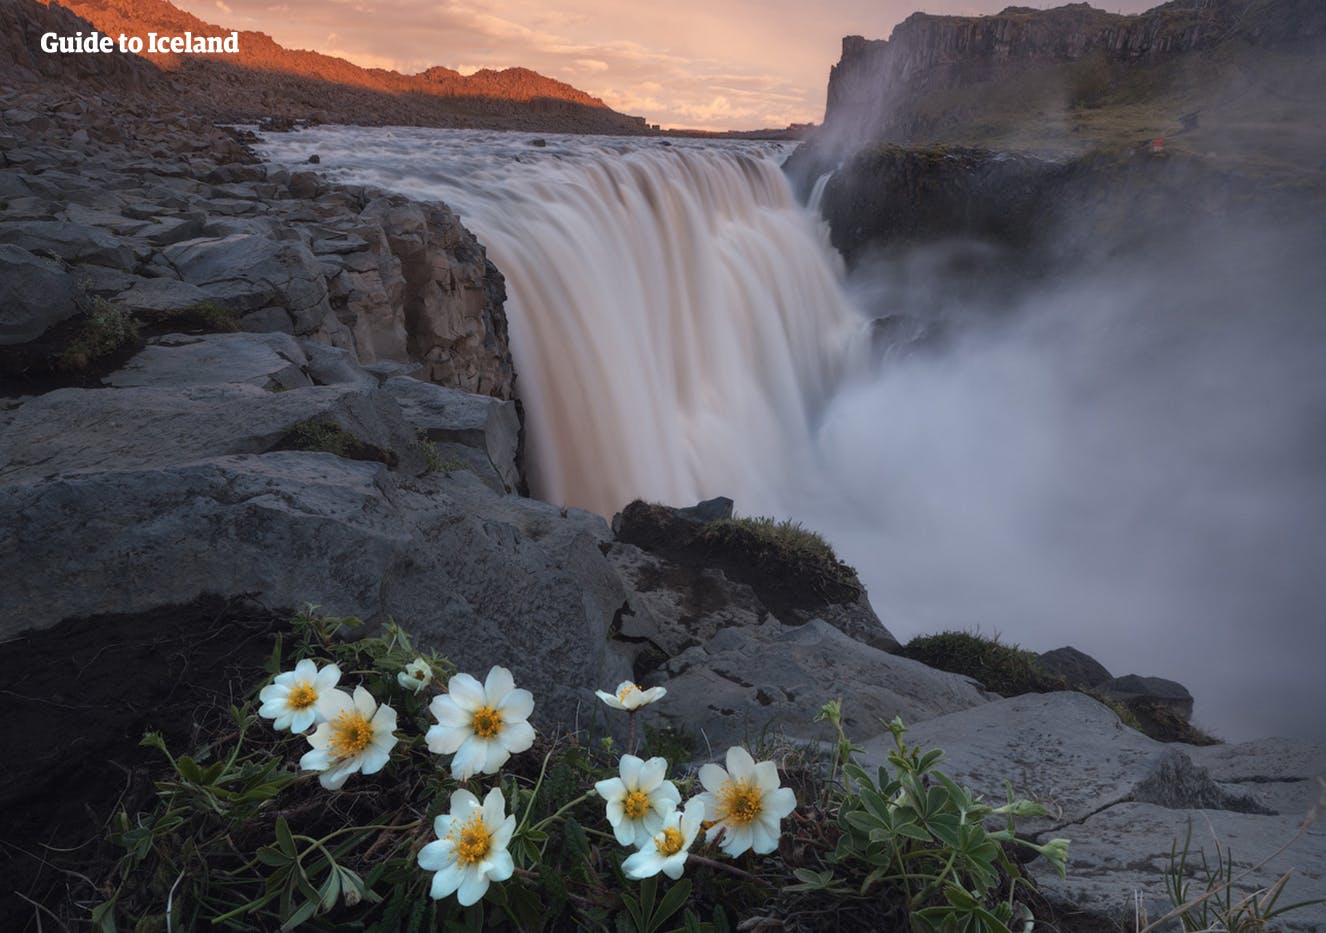 デッティフォスの滝では大きな滝の姿だけでなく、アイスランド特有のハイランドの風景、岩々の重なりあう風景など興味深い景色が見られる